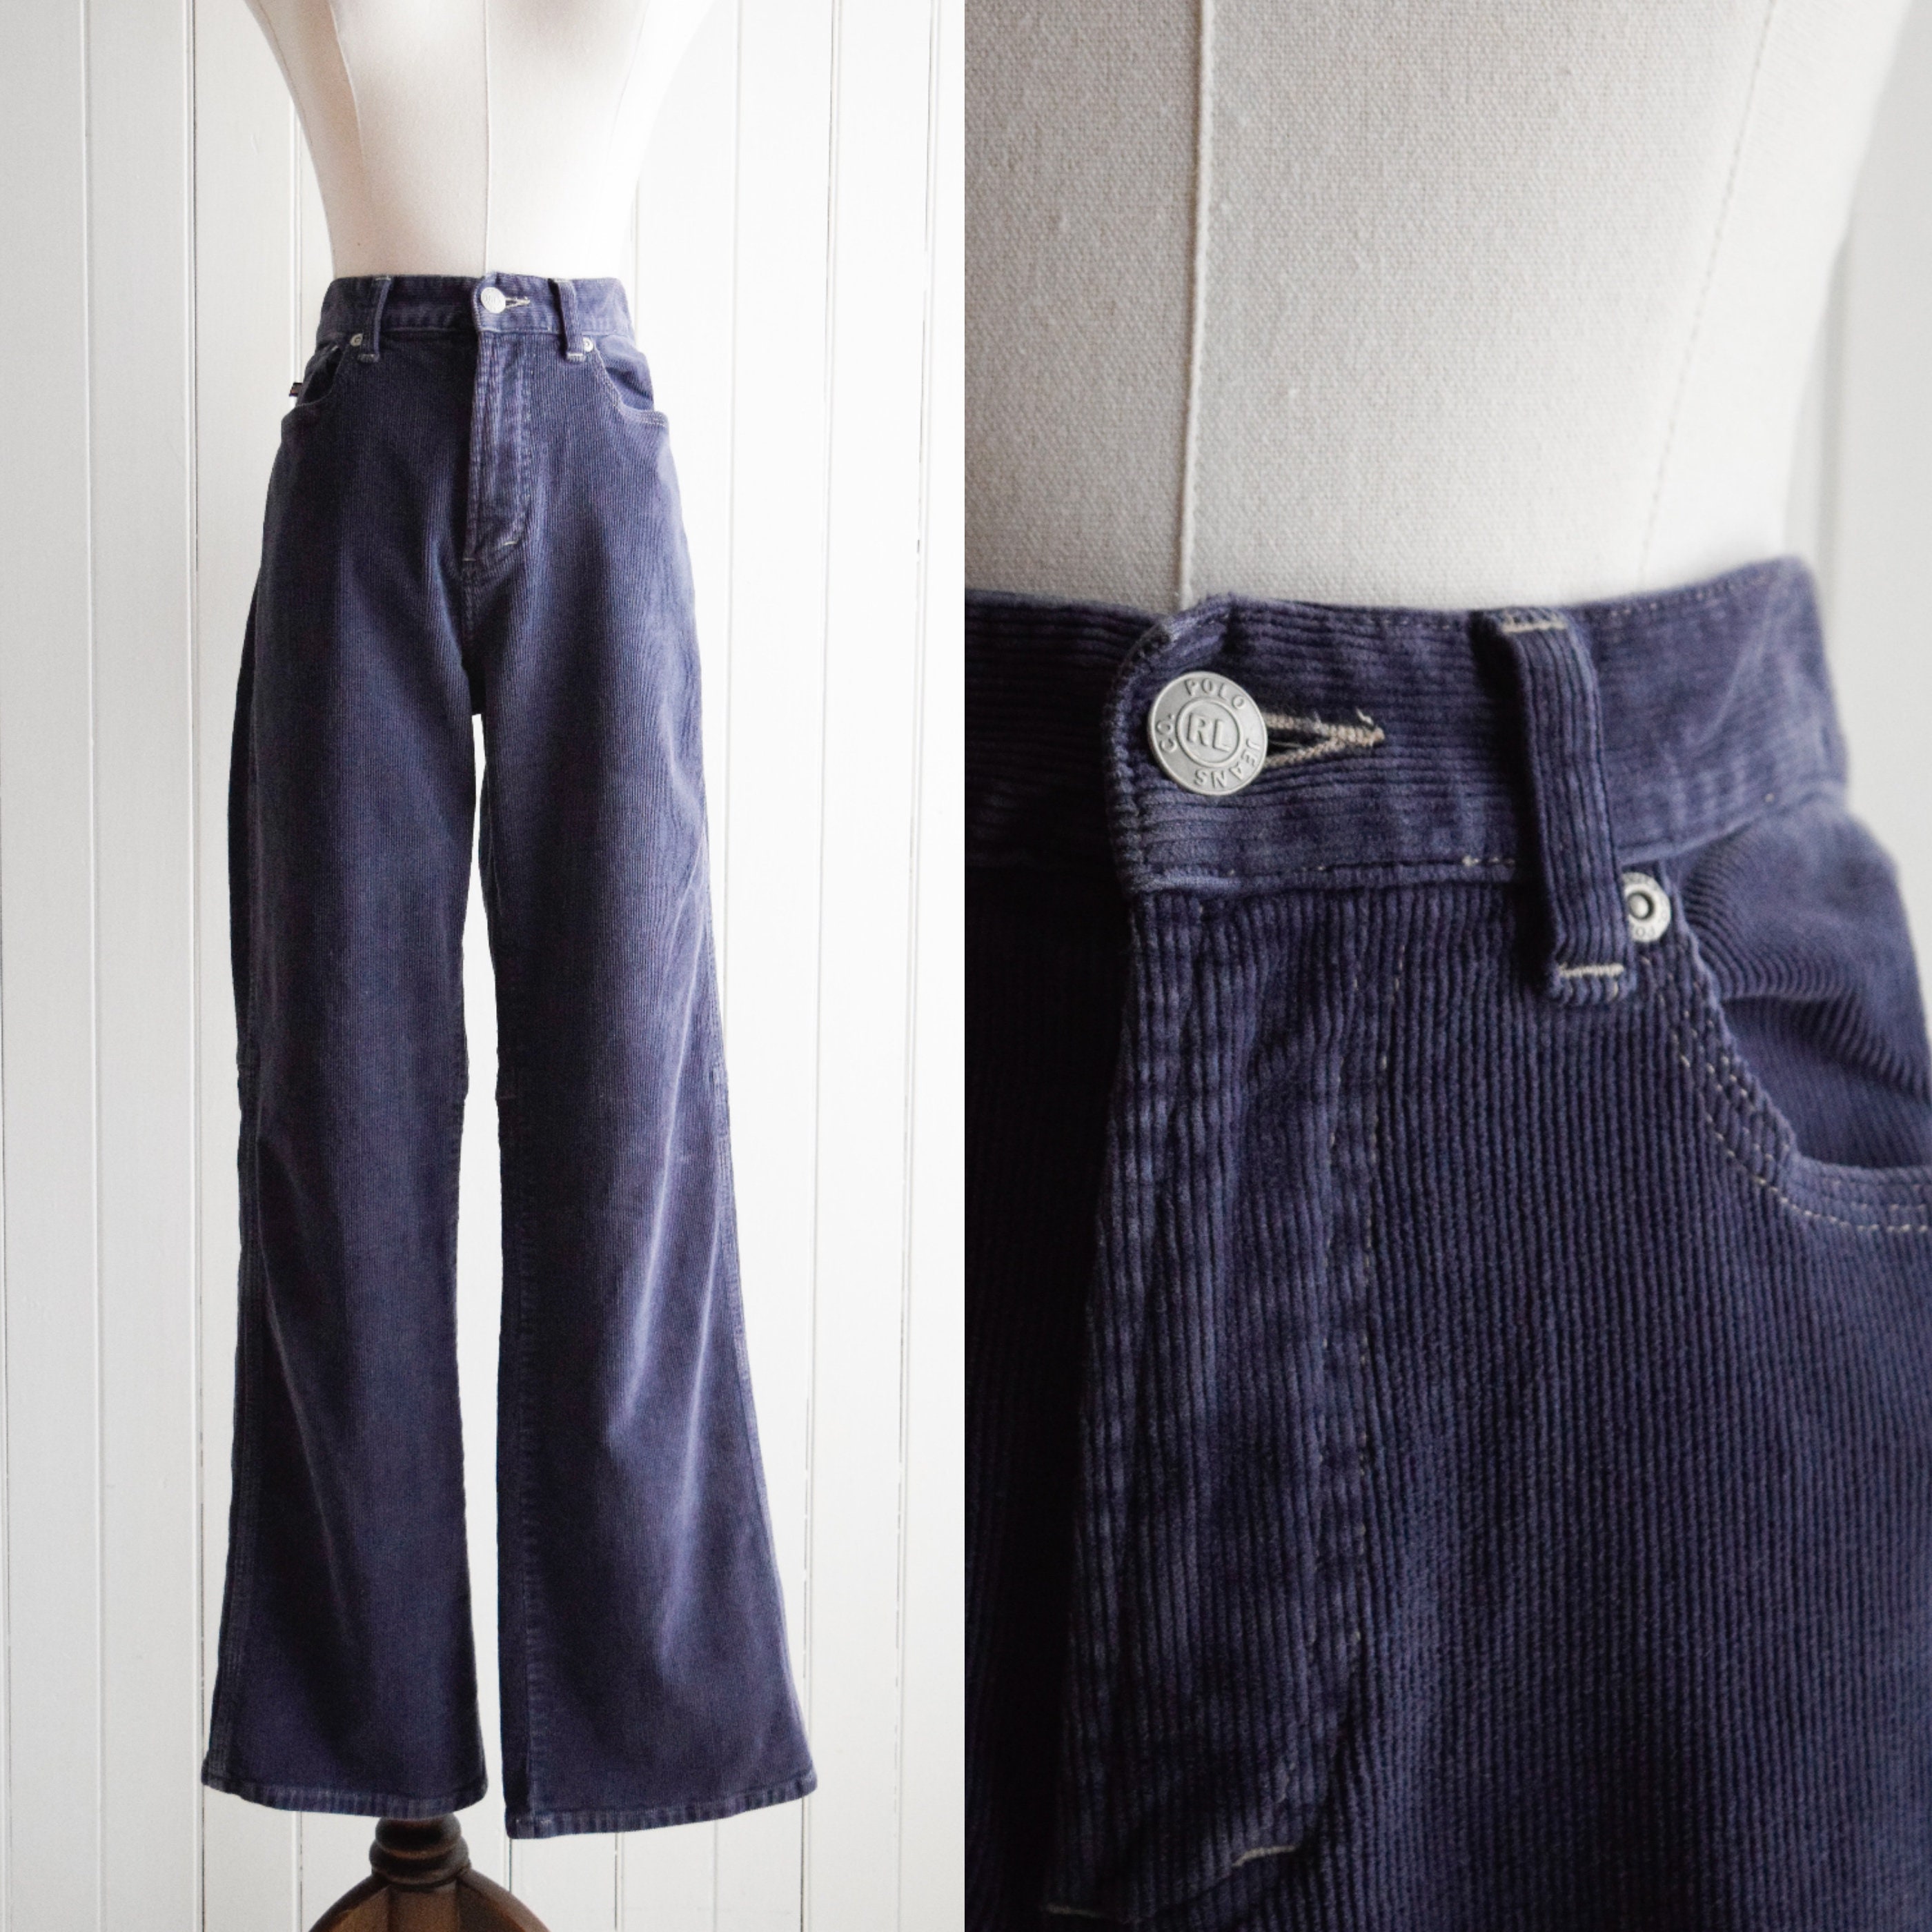 RALPH LAUREN Vintage Short Pants for Women Size XL, Cotton Capris Trousers  -  Canada